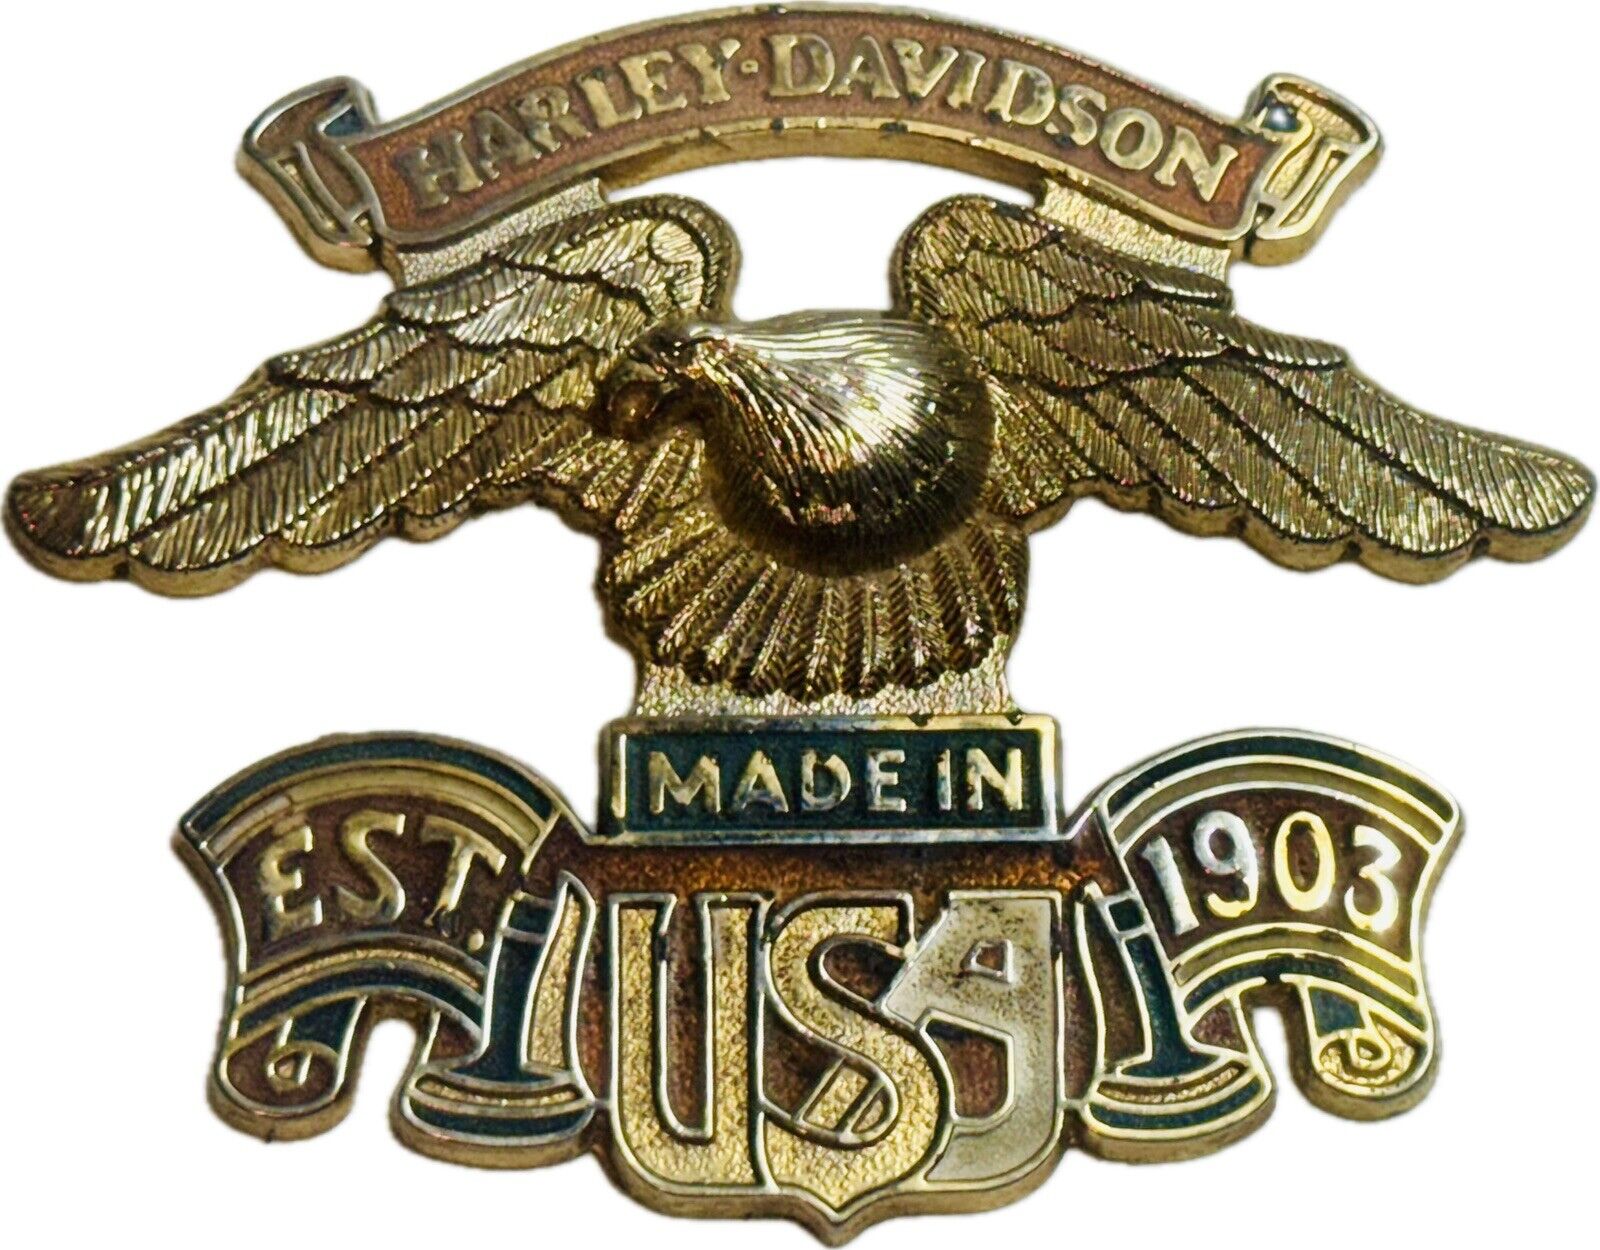 HARLEY DAVIDSON TANK BADGE METAL LOGO EAGLE ESTABLISHED 1903 MOTORCYCLE EMBLEM